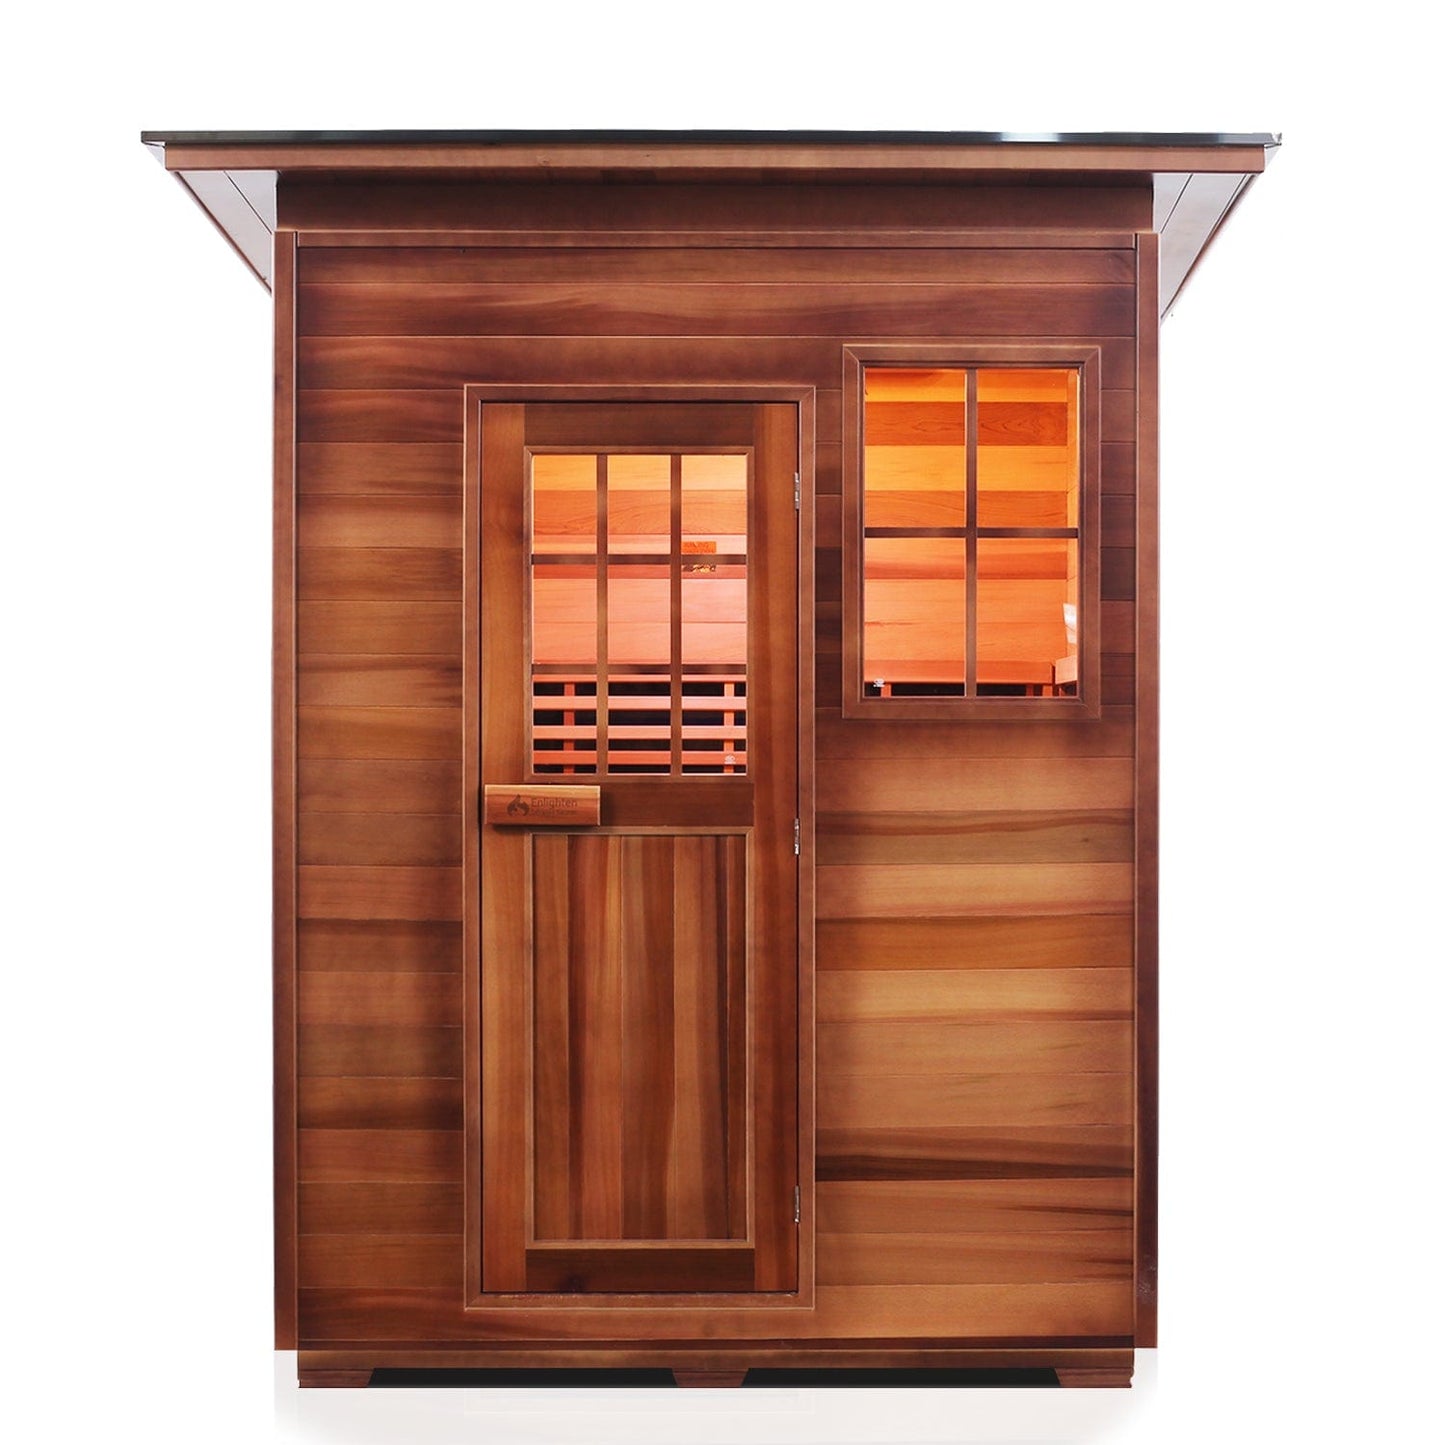 Enlighten Full Spectrum Infrared Sauna SIERRA - 4 Slope - 4 Person - Outdoor Sauna